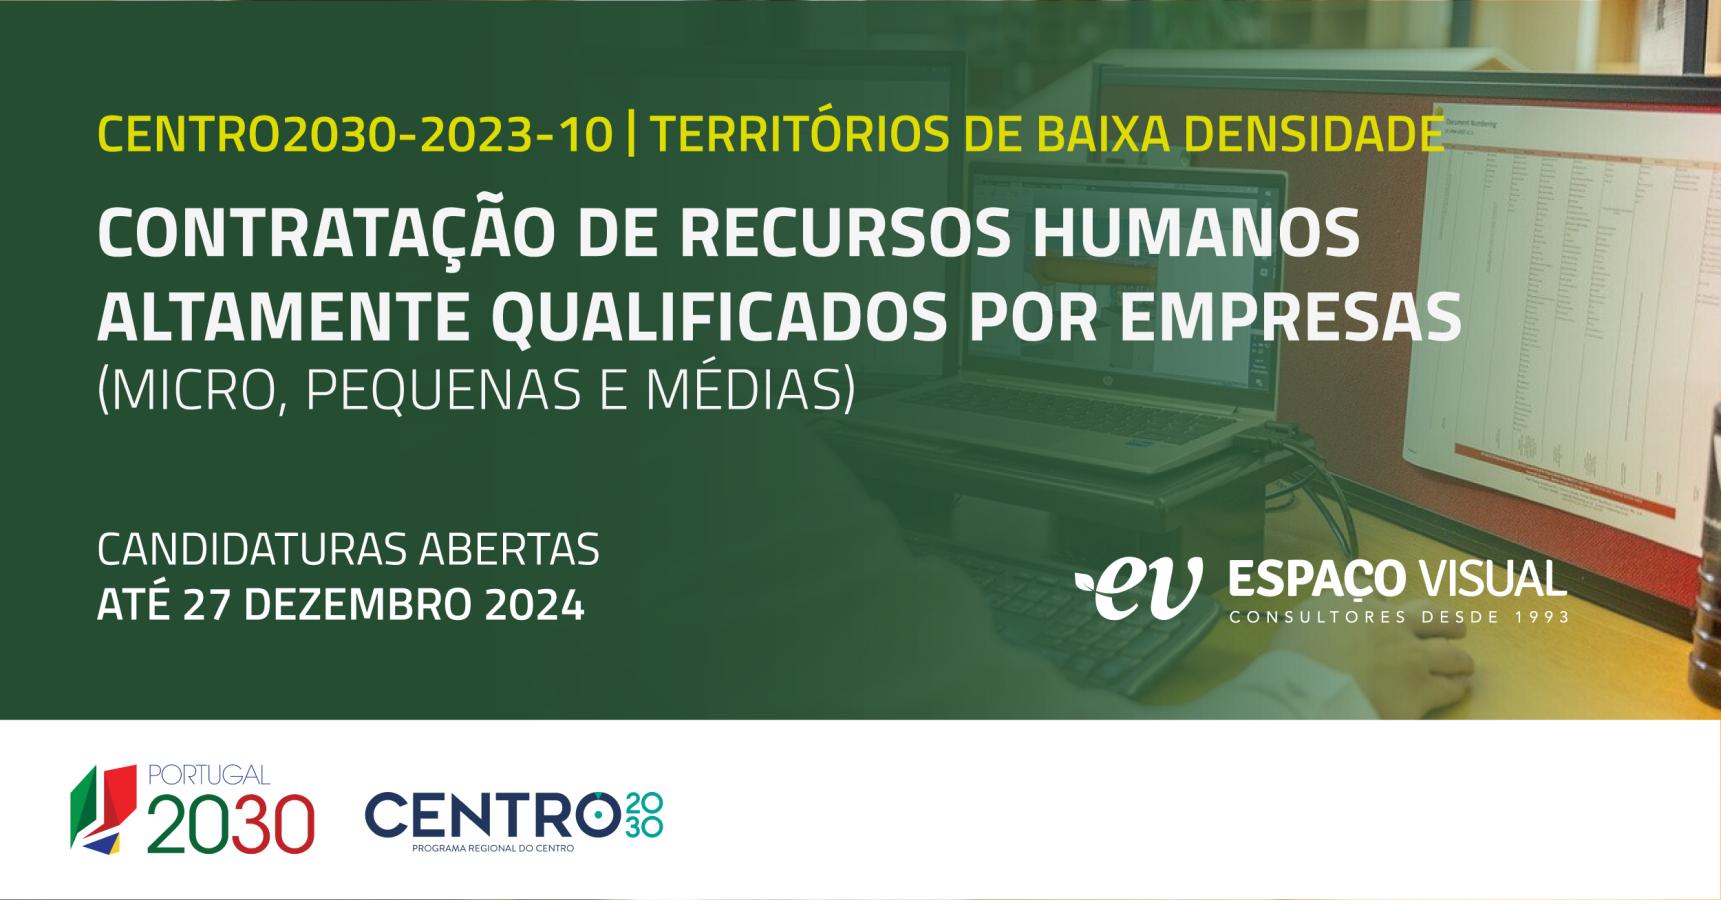 Contratação de Recursos Humanos Altamente Qualificados por empresas (micro, pequenas e médias) – Territórios de baixa densidade | CENTRO2030-2023-10